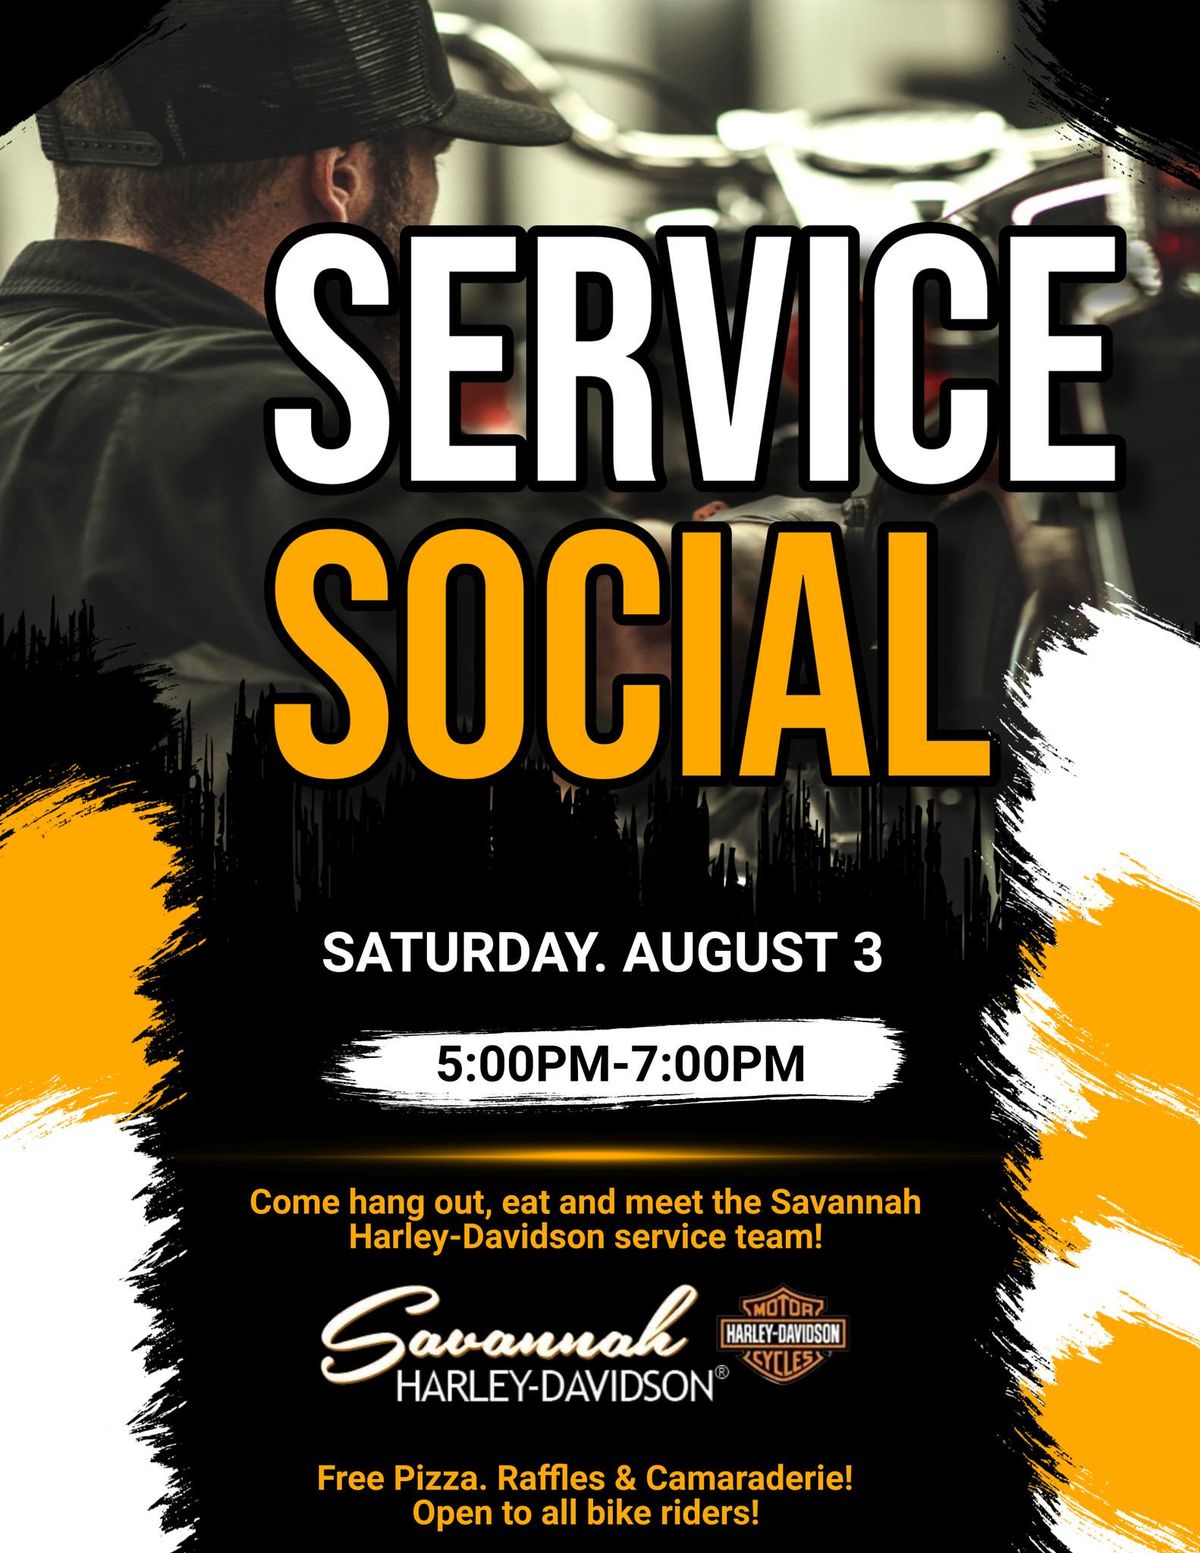 Service social night